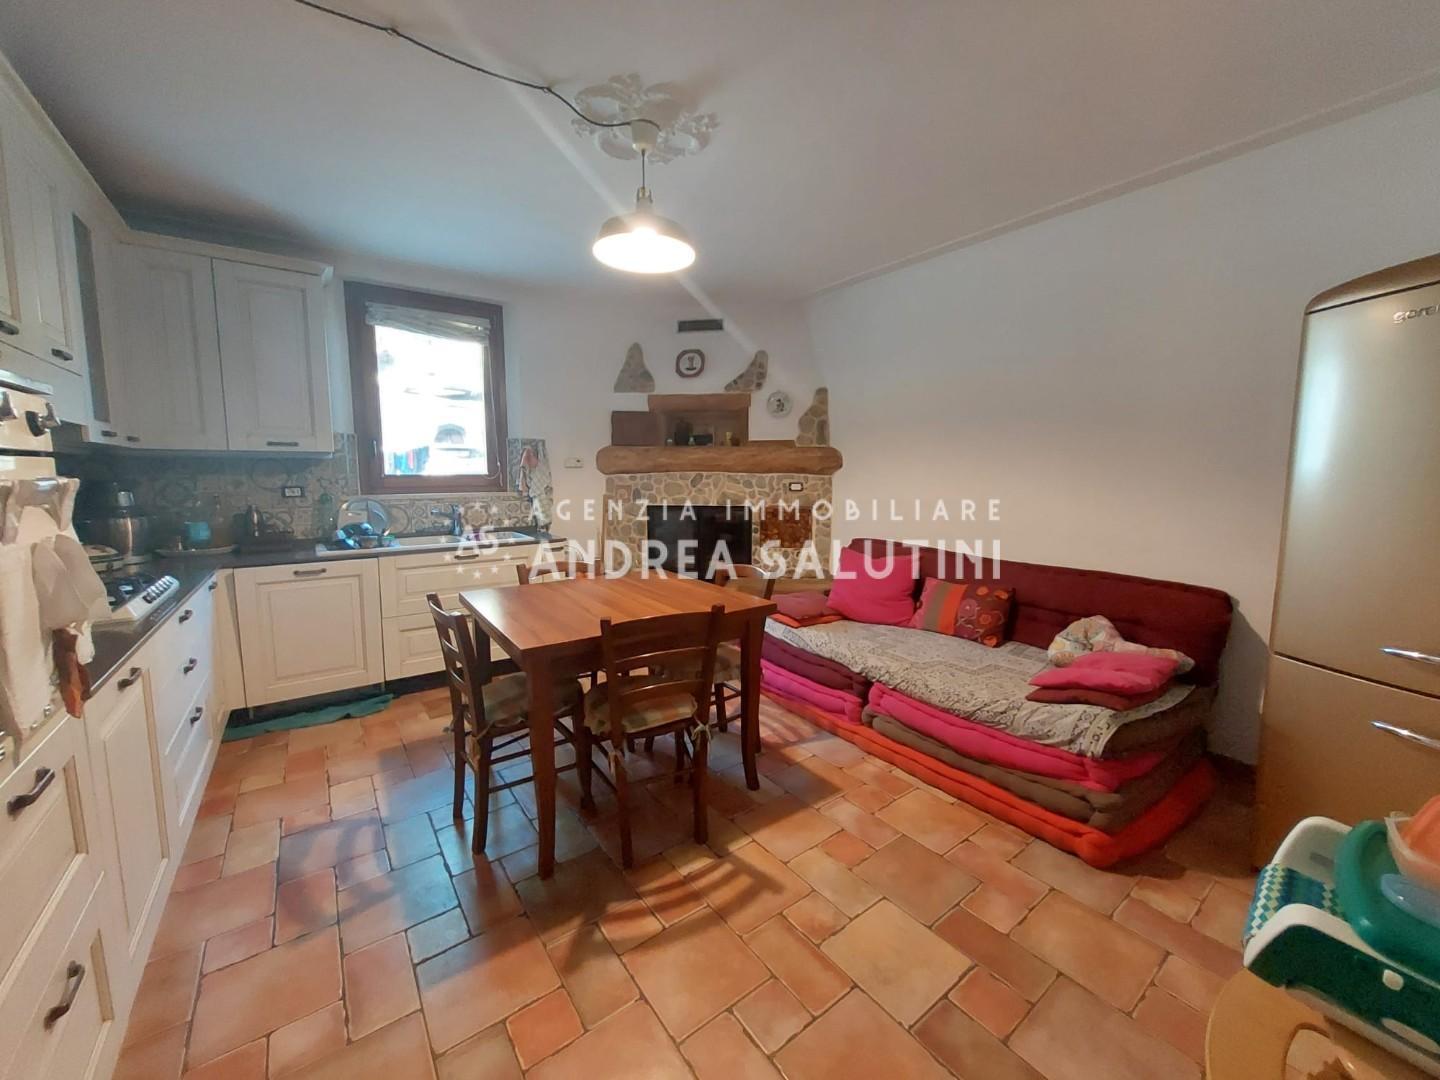 Appartamento in vendita a Montopoli in Val d'Arno, 4 locali, prezzo € 139.000 | PortaleAgenzieImmobiliari.it